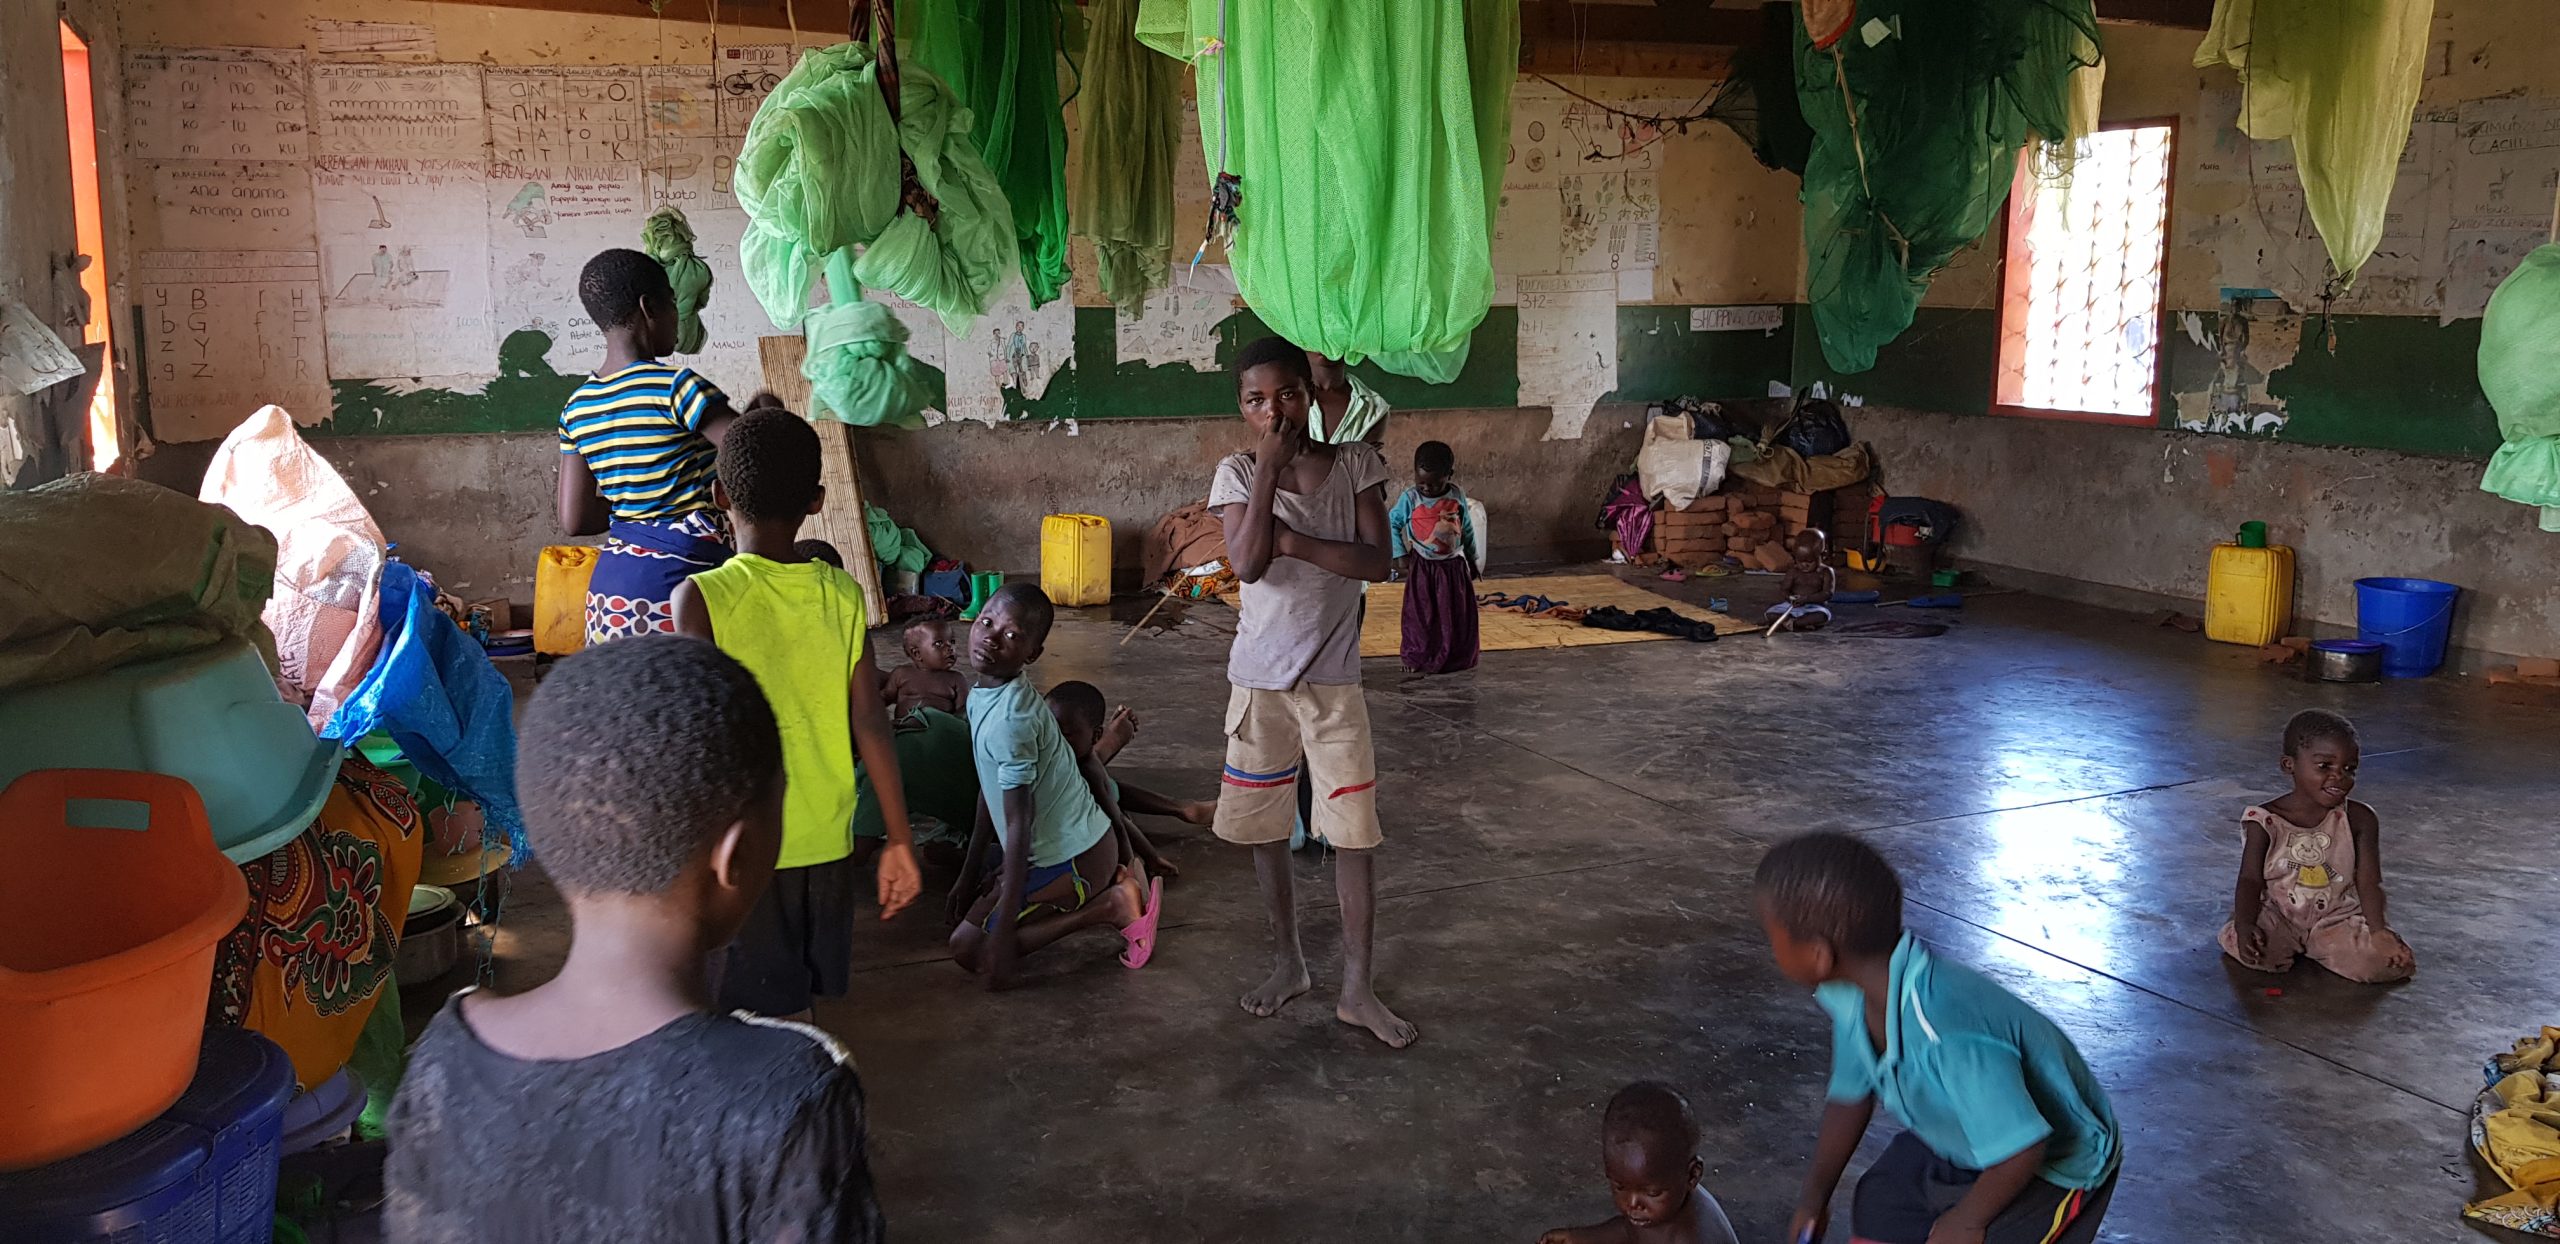 Malnutrition threatens over half million children in Malawi: UN